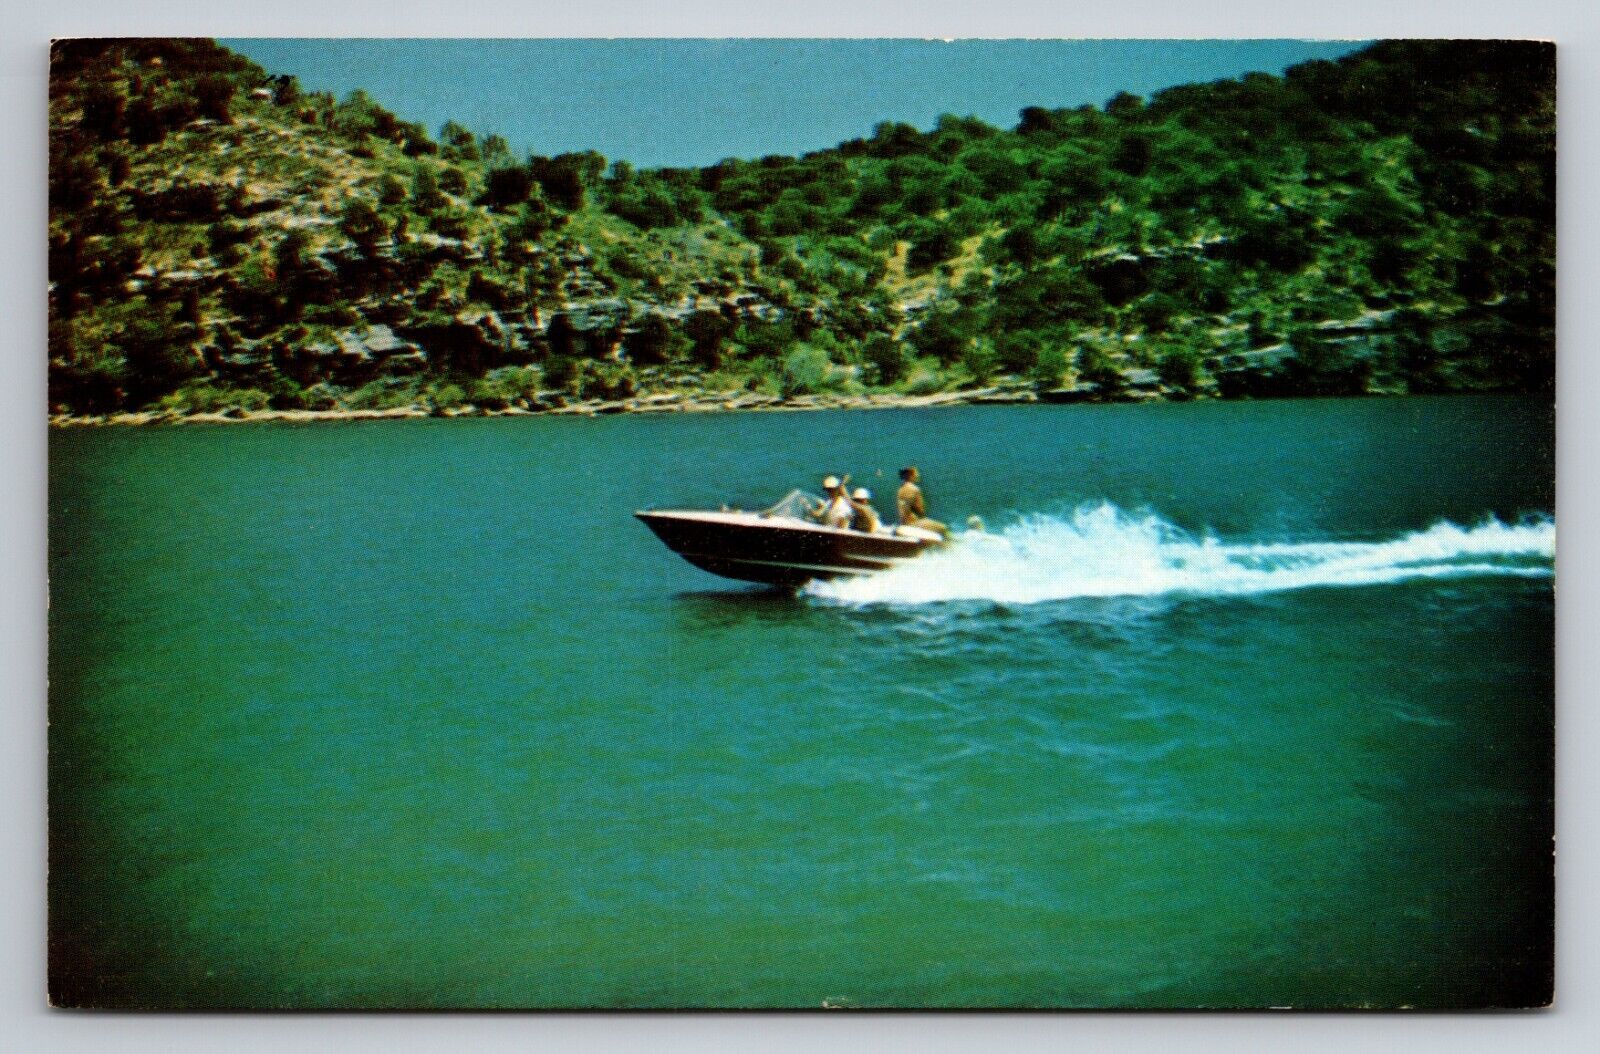 Lake Marble Falls Texas Vintage Unposted Postcard Pleasure Craft Boat